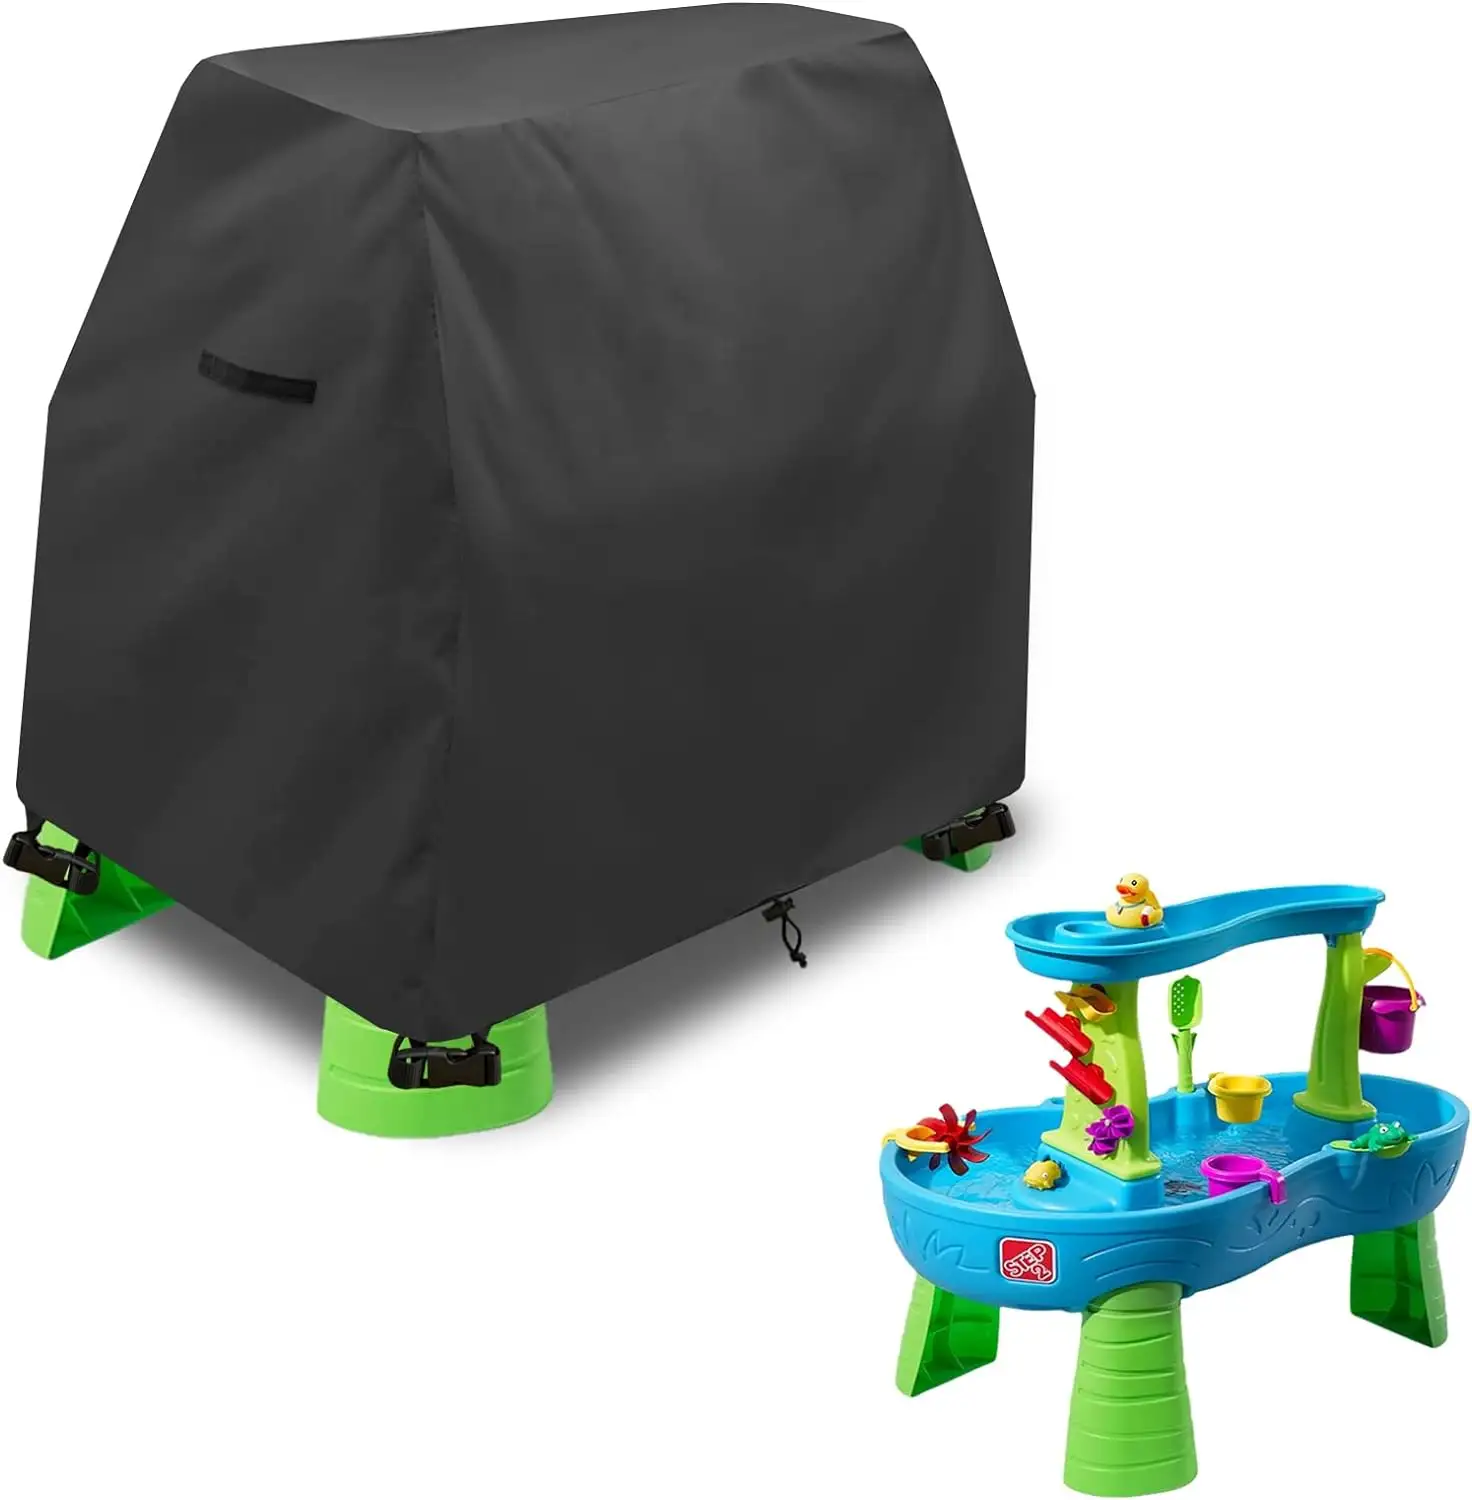 키즈 워터 테이블 커버 Fit Step2 레인 샤워 스플래시 연못 물 테이블, 방수 방진 자외선 차단 야외 장난감 커버